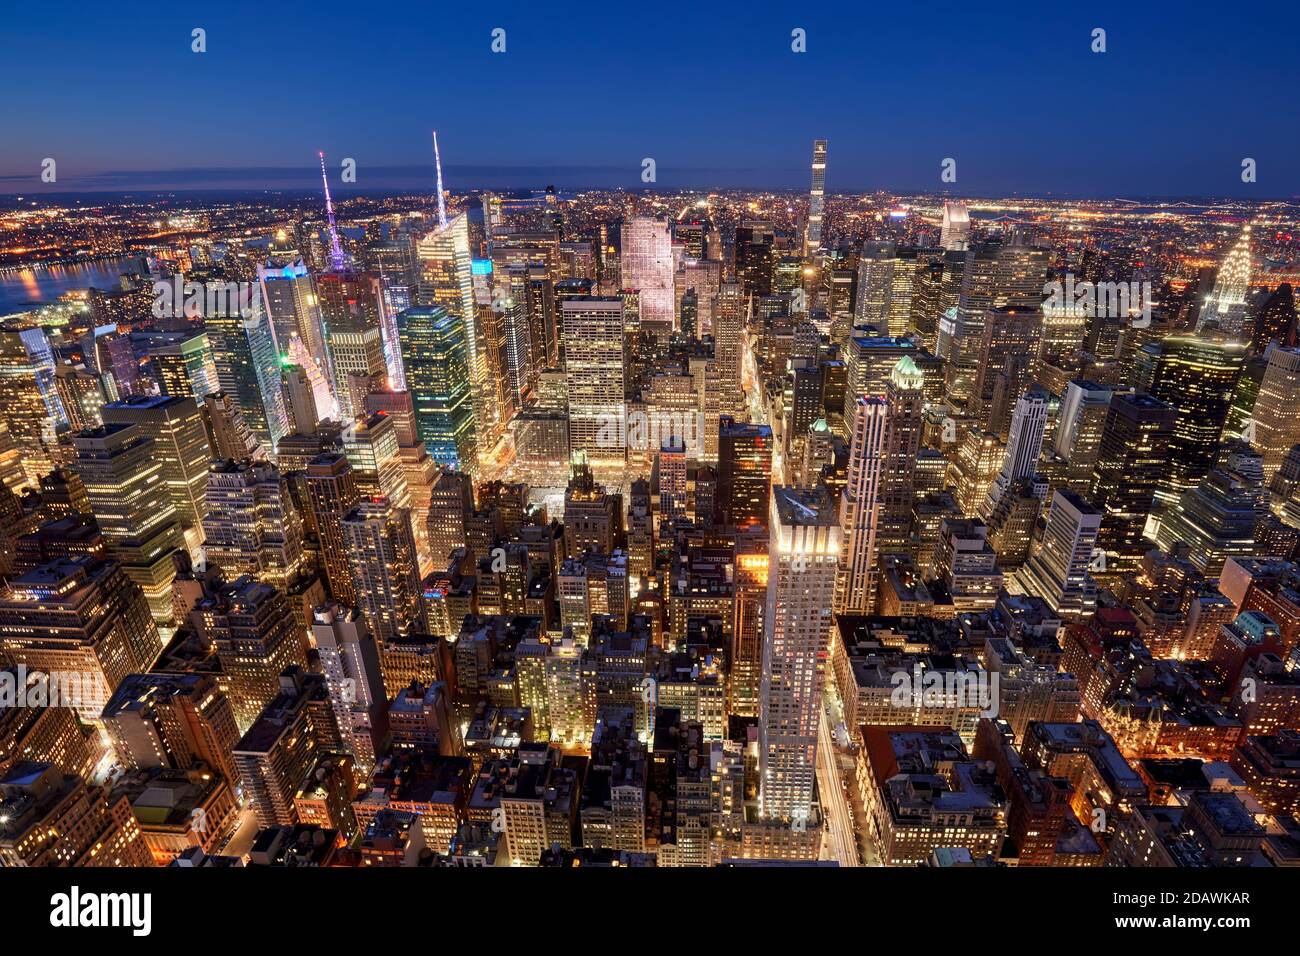 Vue aérienne en soirée sur Midtown New York City le long de Fifth Avenue. Gratte-ciel de Manhattan illuminés, NYC.USA Banque D'Images